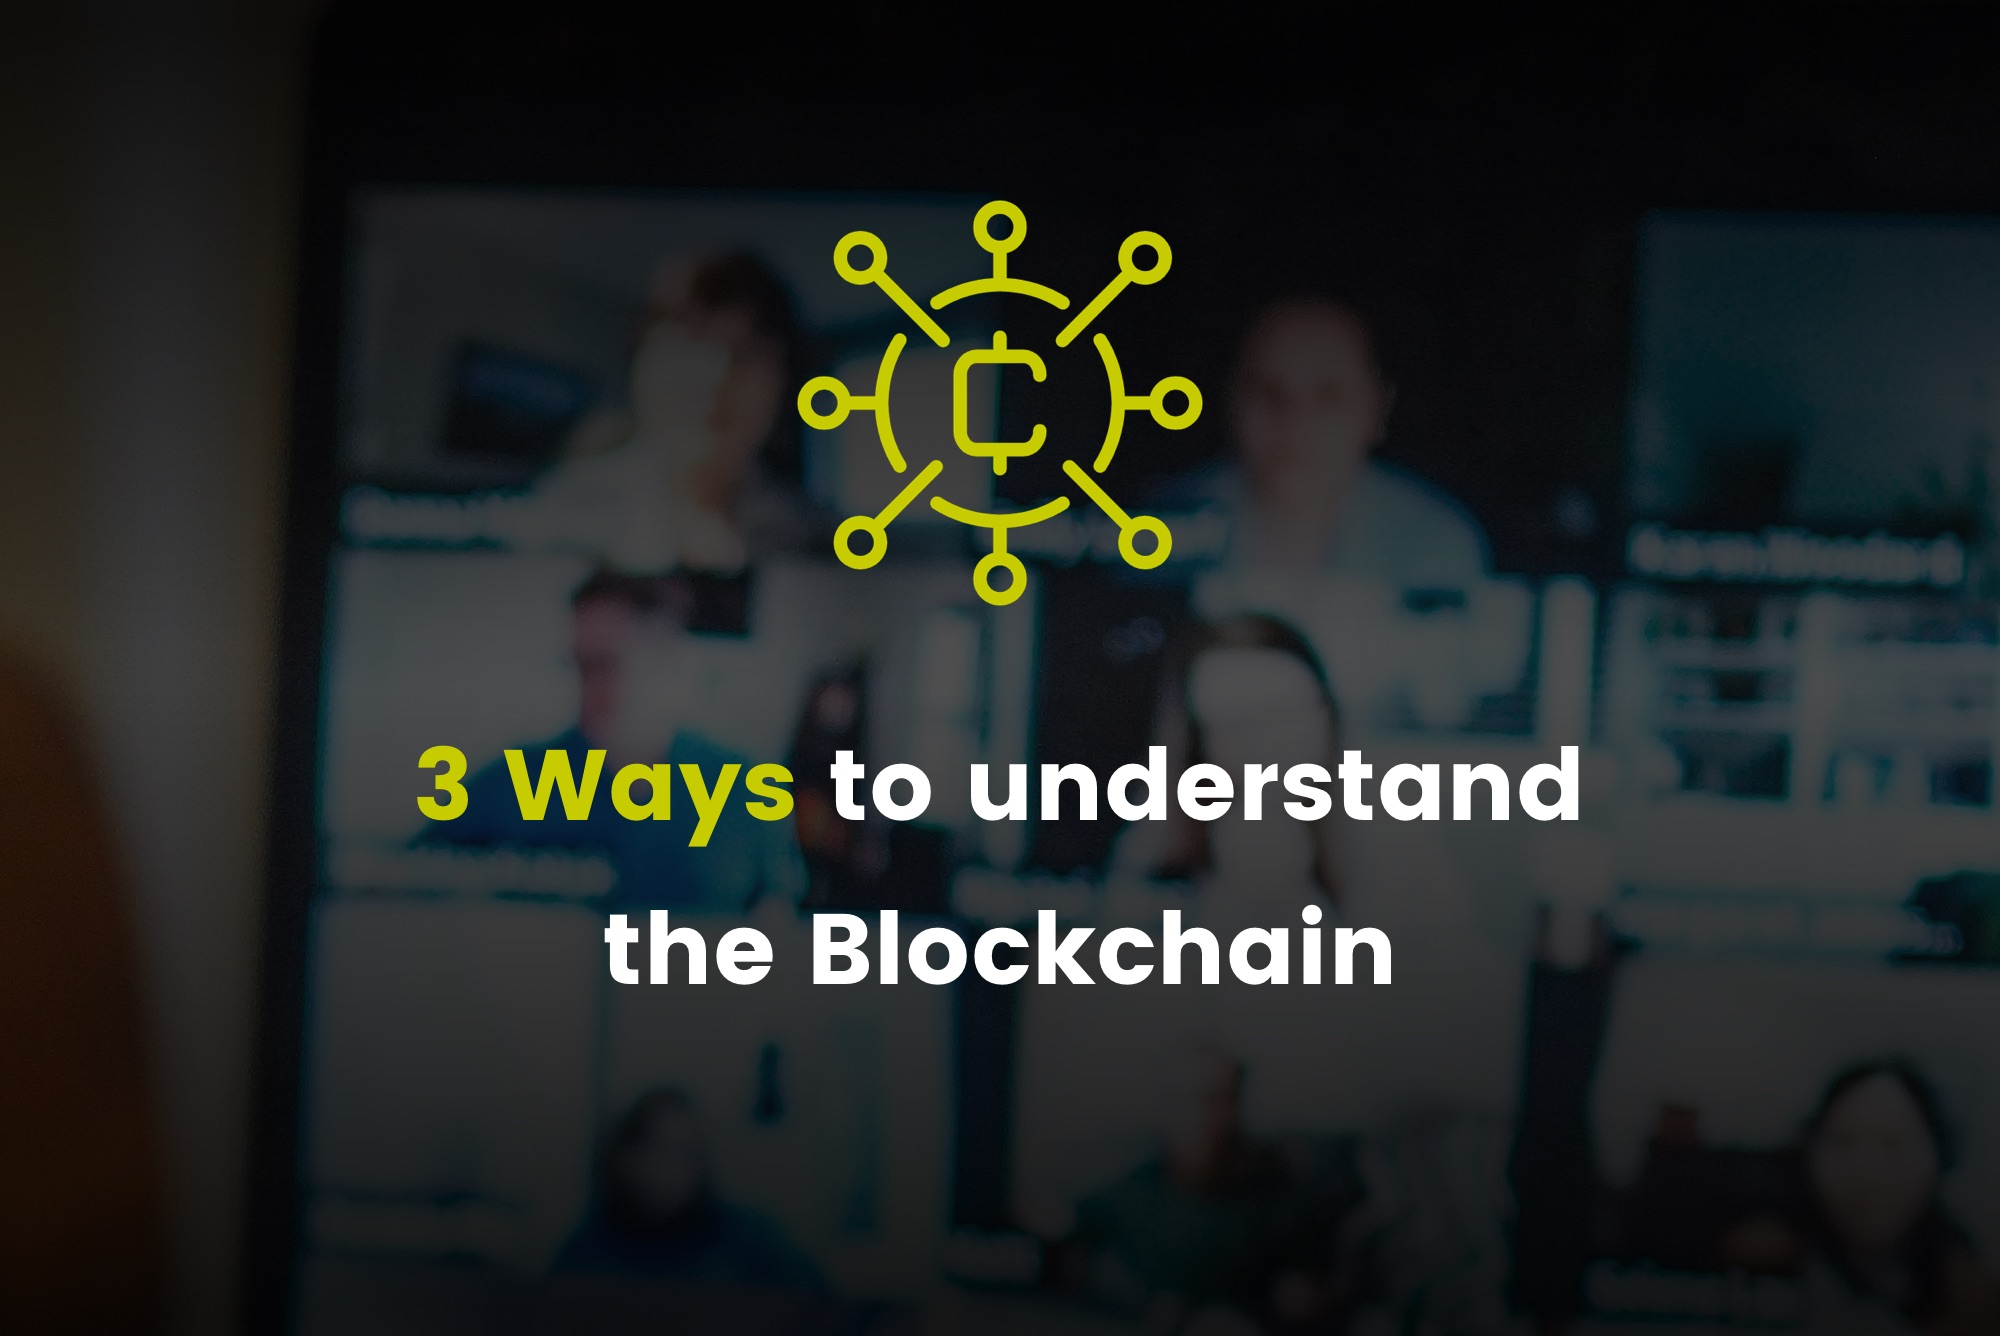 3 Ways to understand the Blockchain